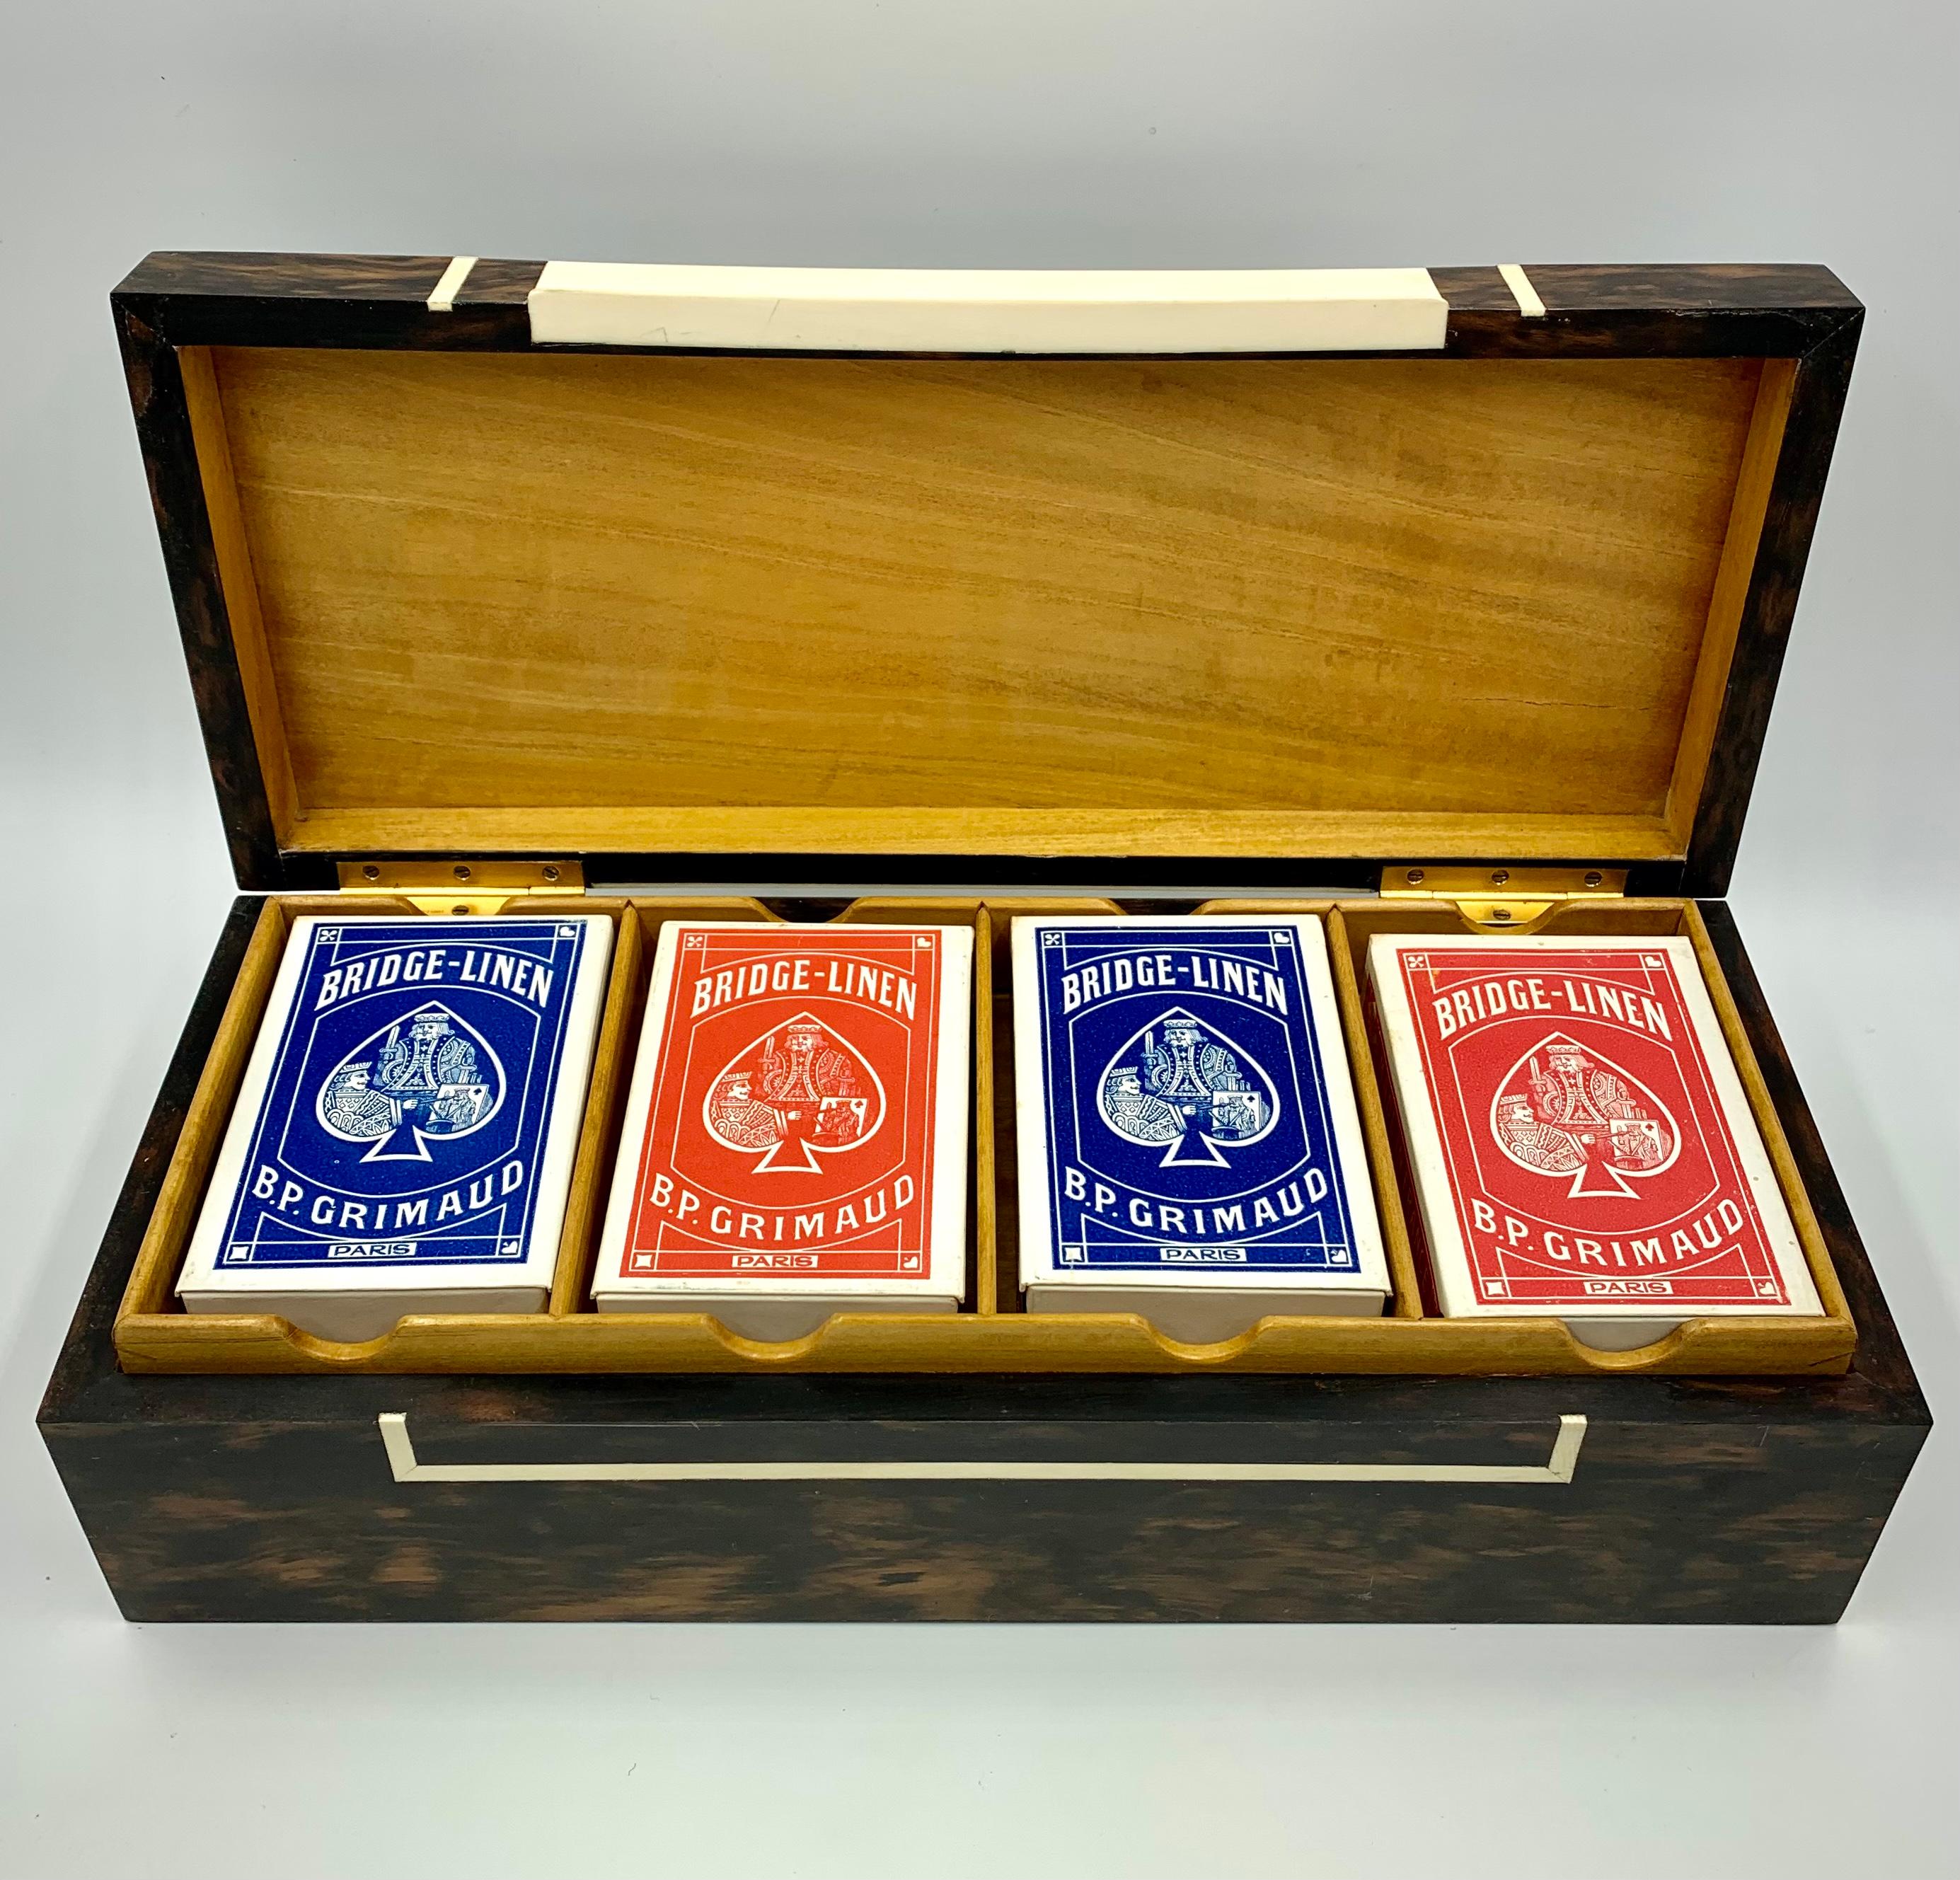 Une fabuleuse boîte de jeu vintage de l'estimable fabricant de produits de luxe londonien Dunhill. Signé Alfred Dunhill Paris fab. Anglaise, cette boîte de jeu en bois exotique est équipée d'un plateau amovible pour quatre jeux de cartes et d'un